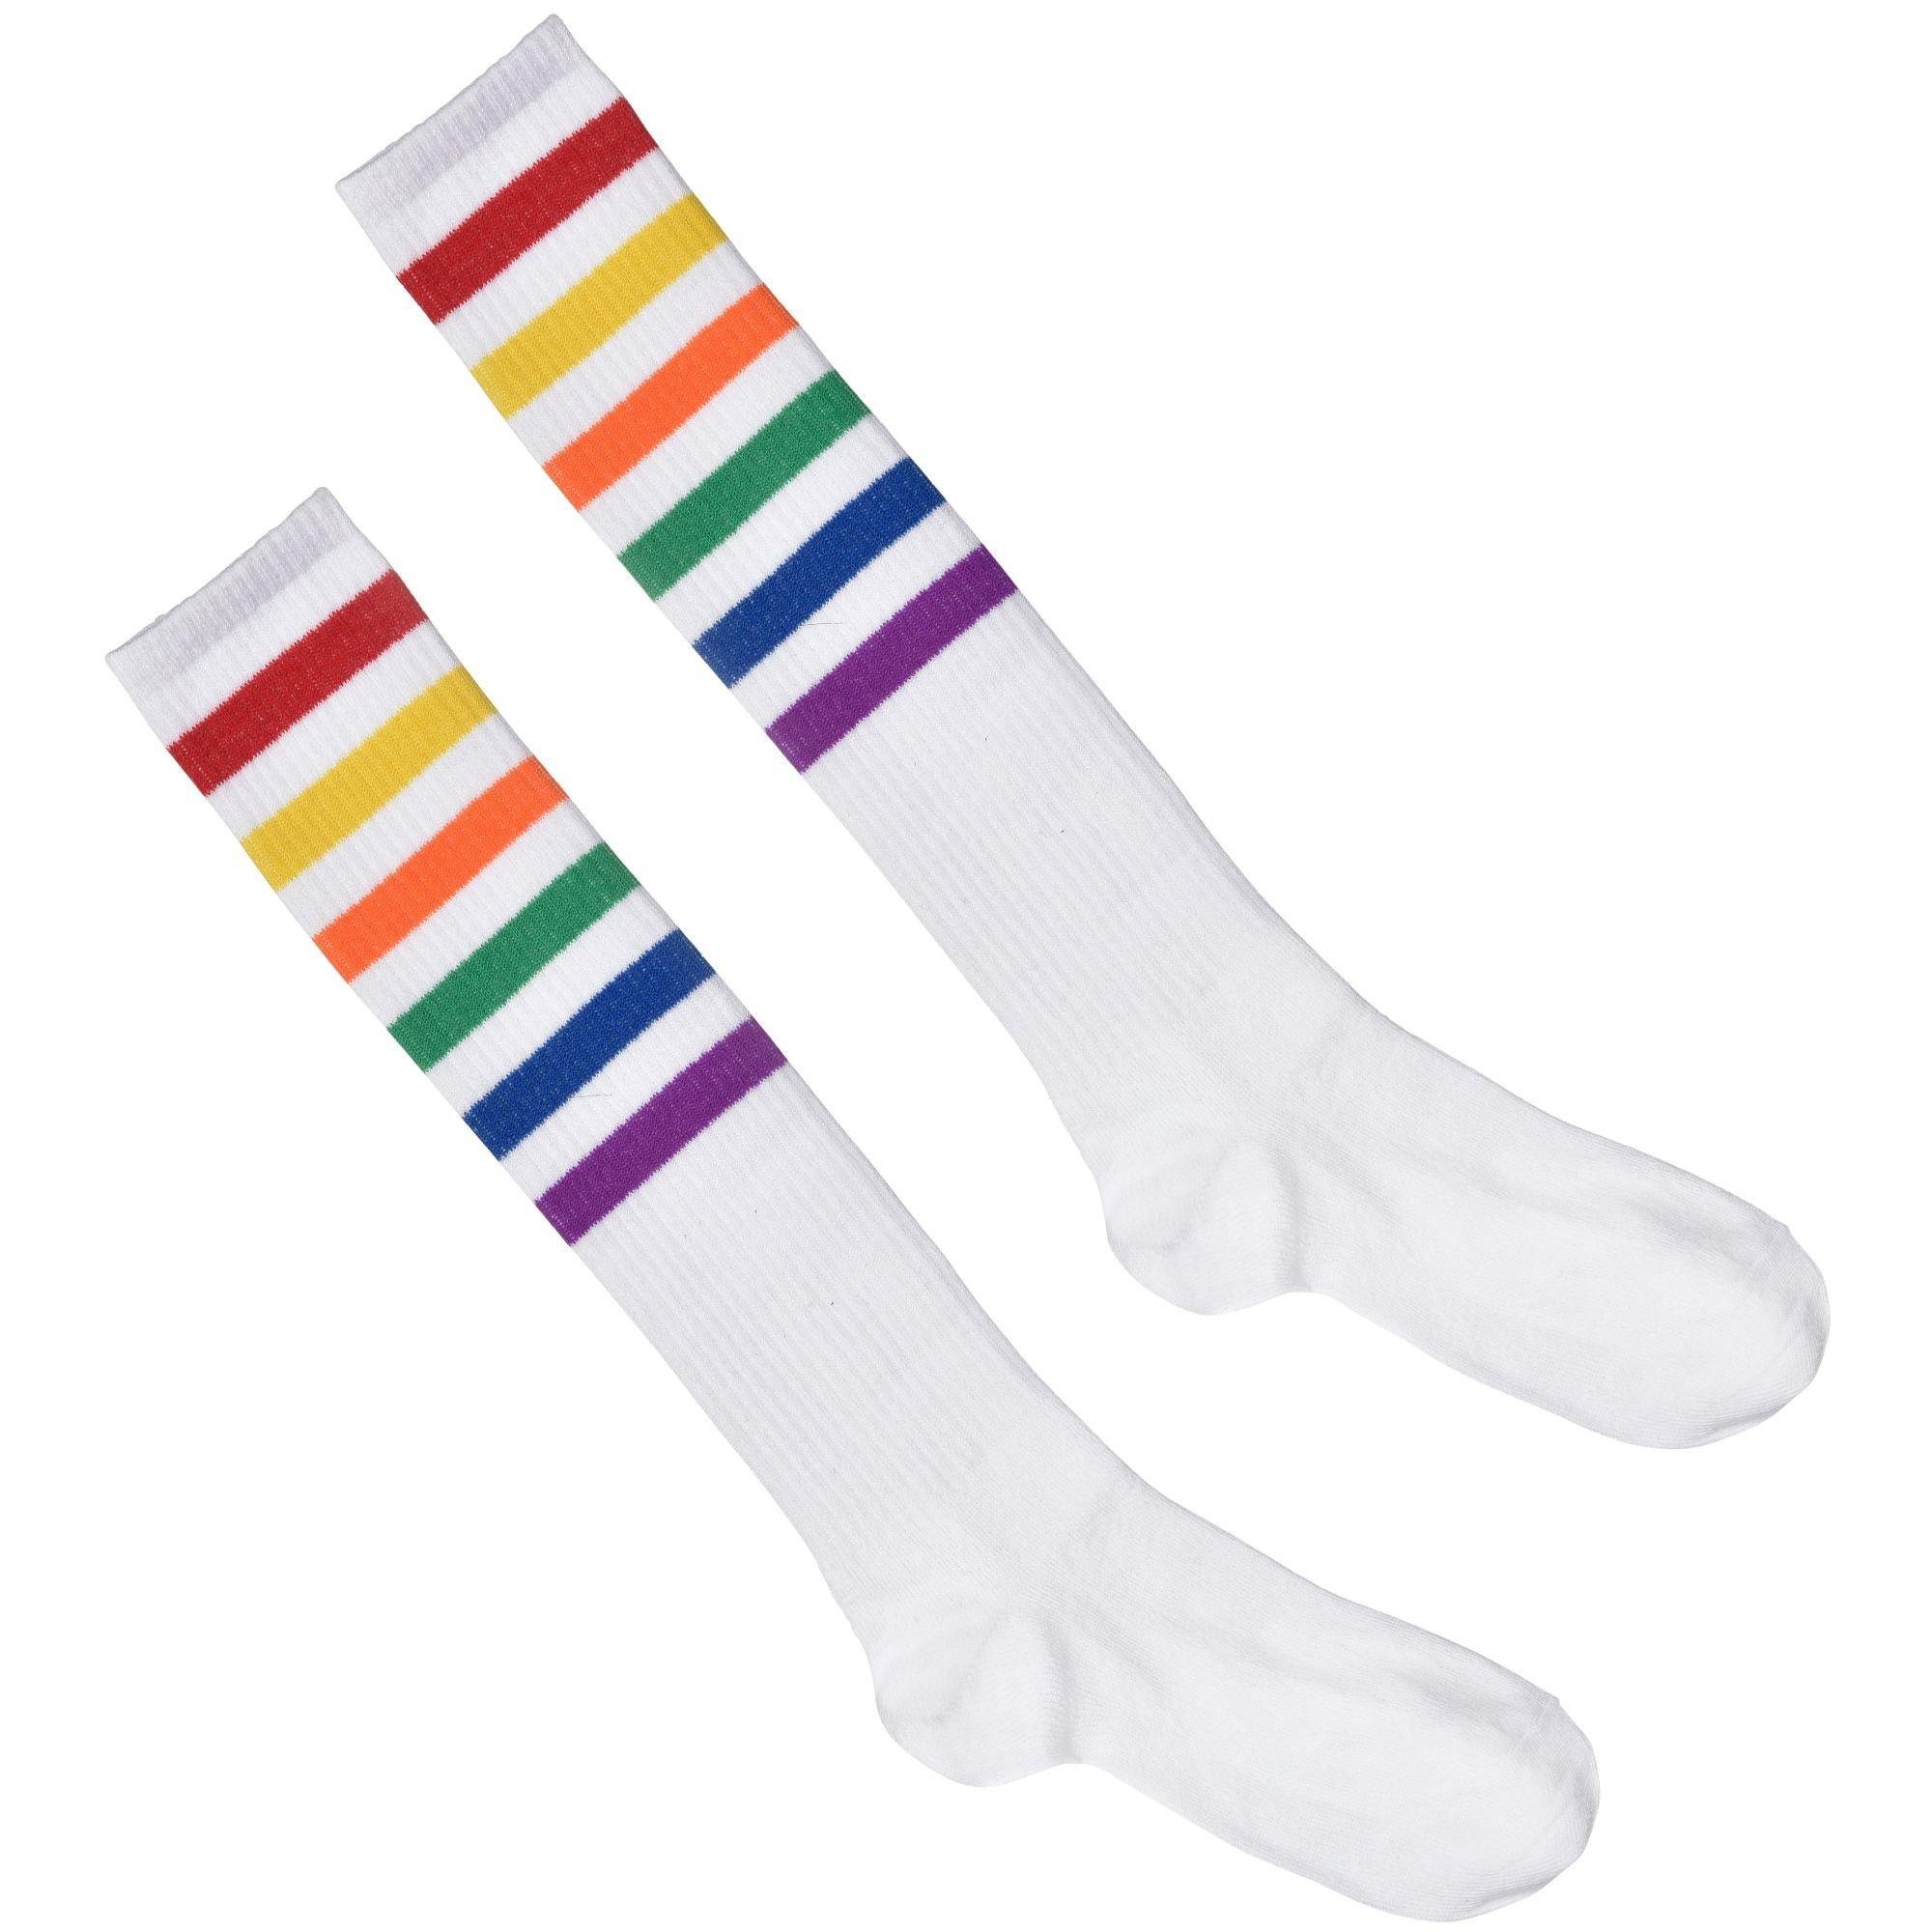 NEON RAINBOW KNEE Socks, Stripe Over the Knee Socks, Athletic Socks, 80s  Accessories -  Canada